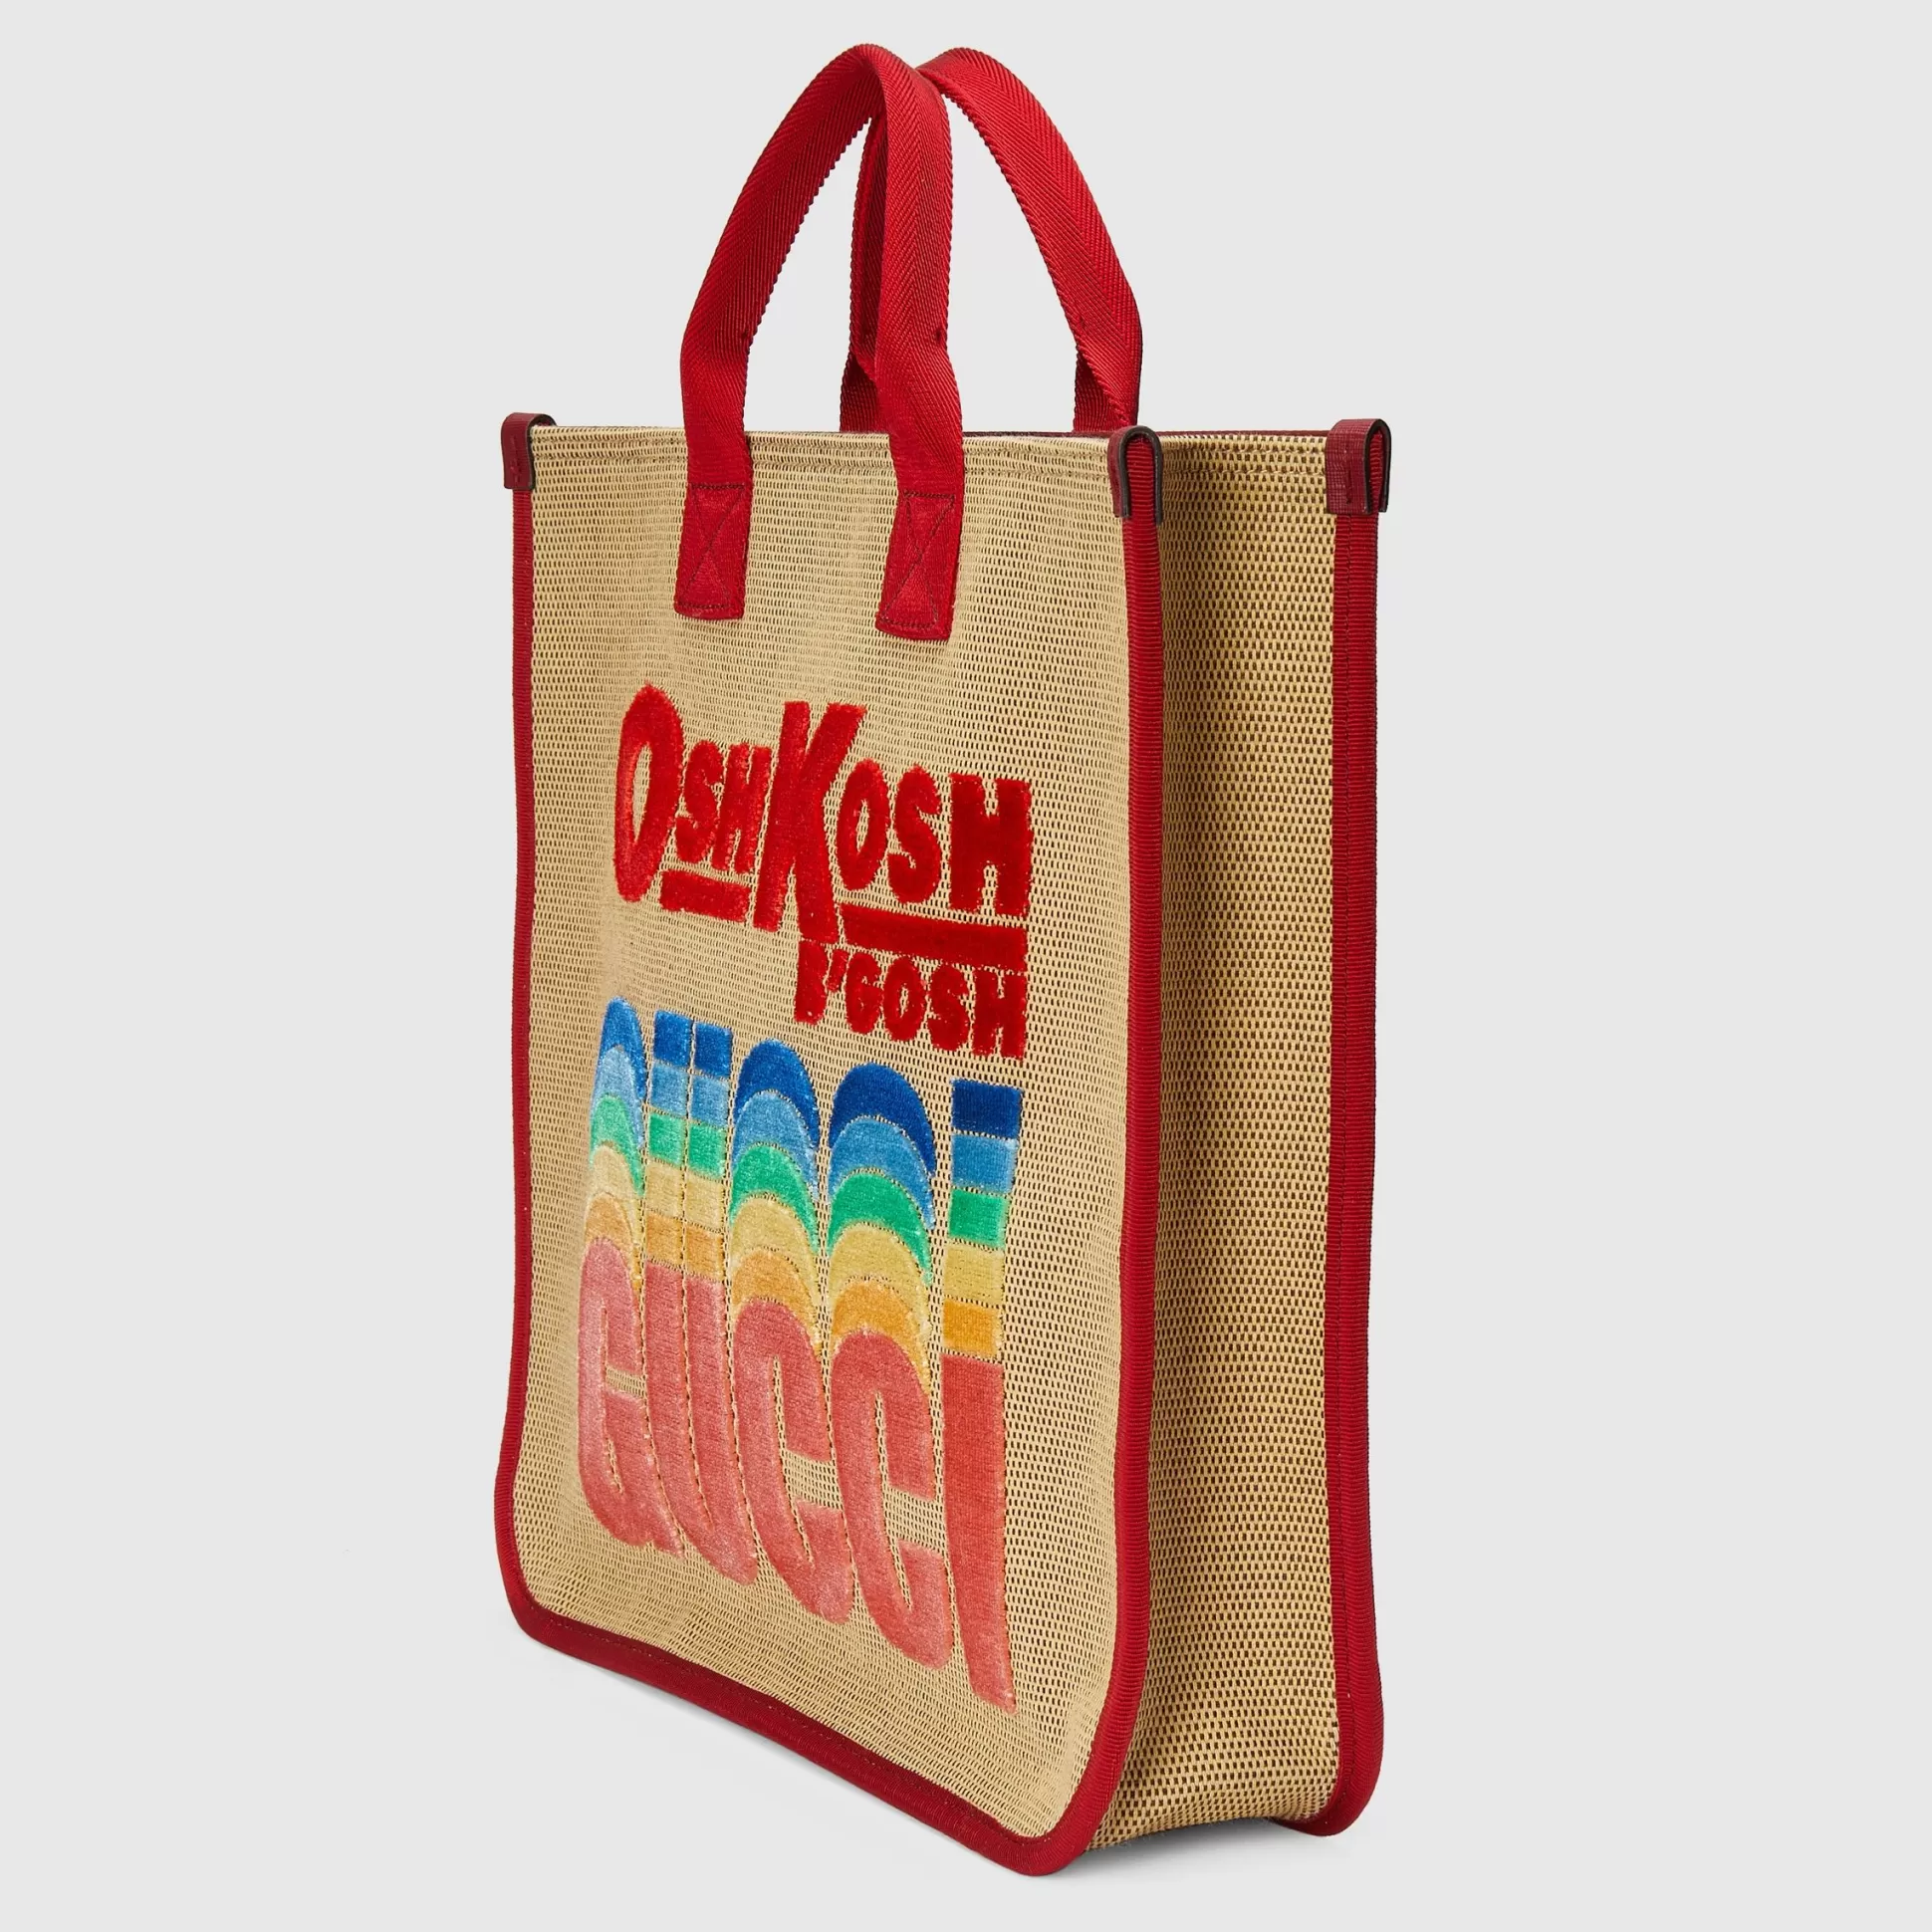 GUCCI Children'S Oshkosh B'Gosh Tote Bag-Children Bags & Backpacks